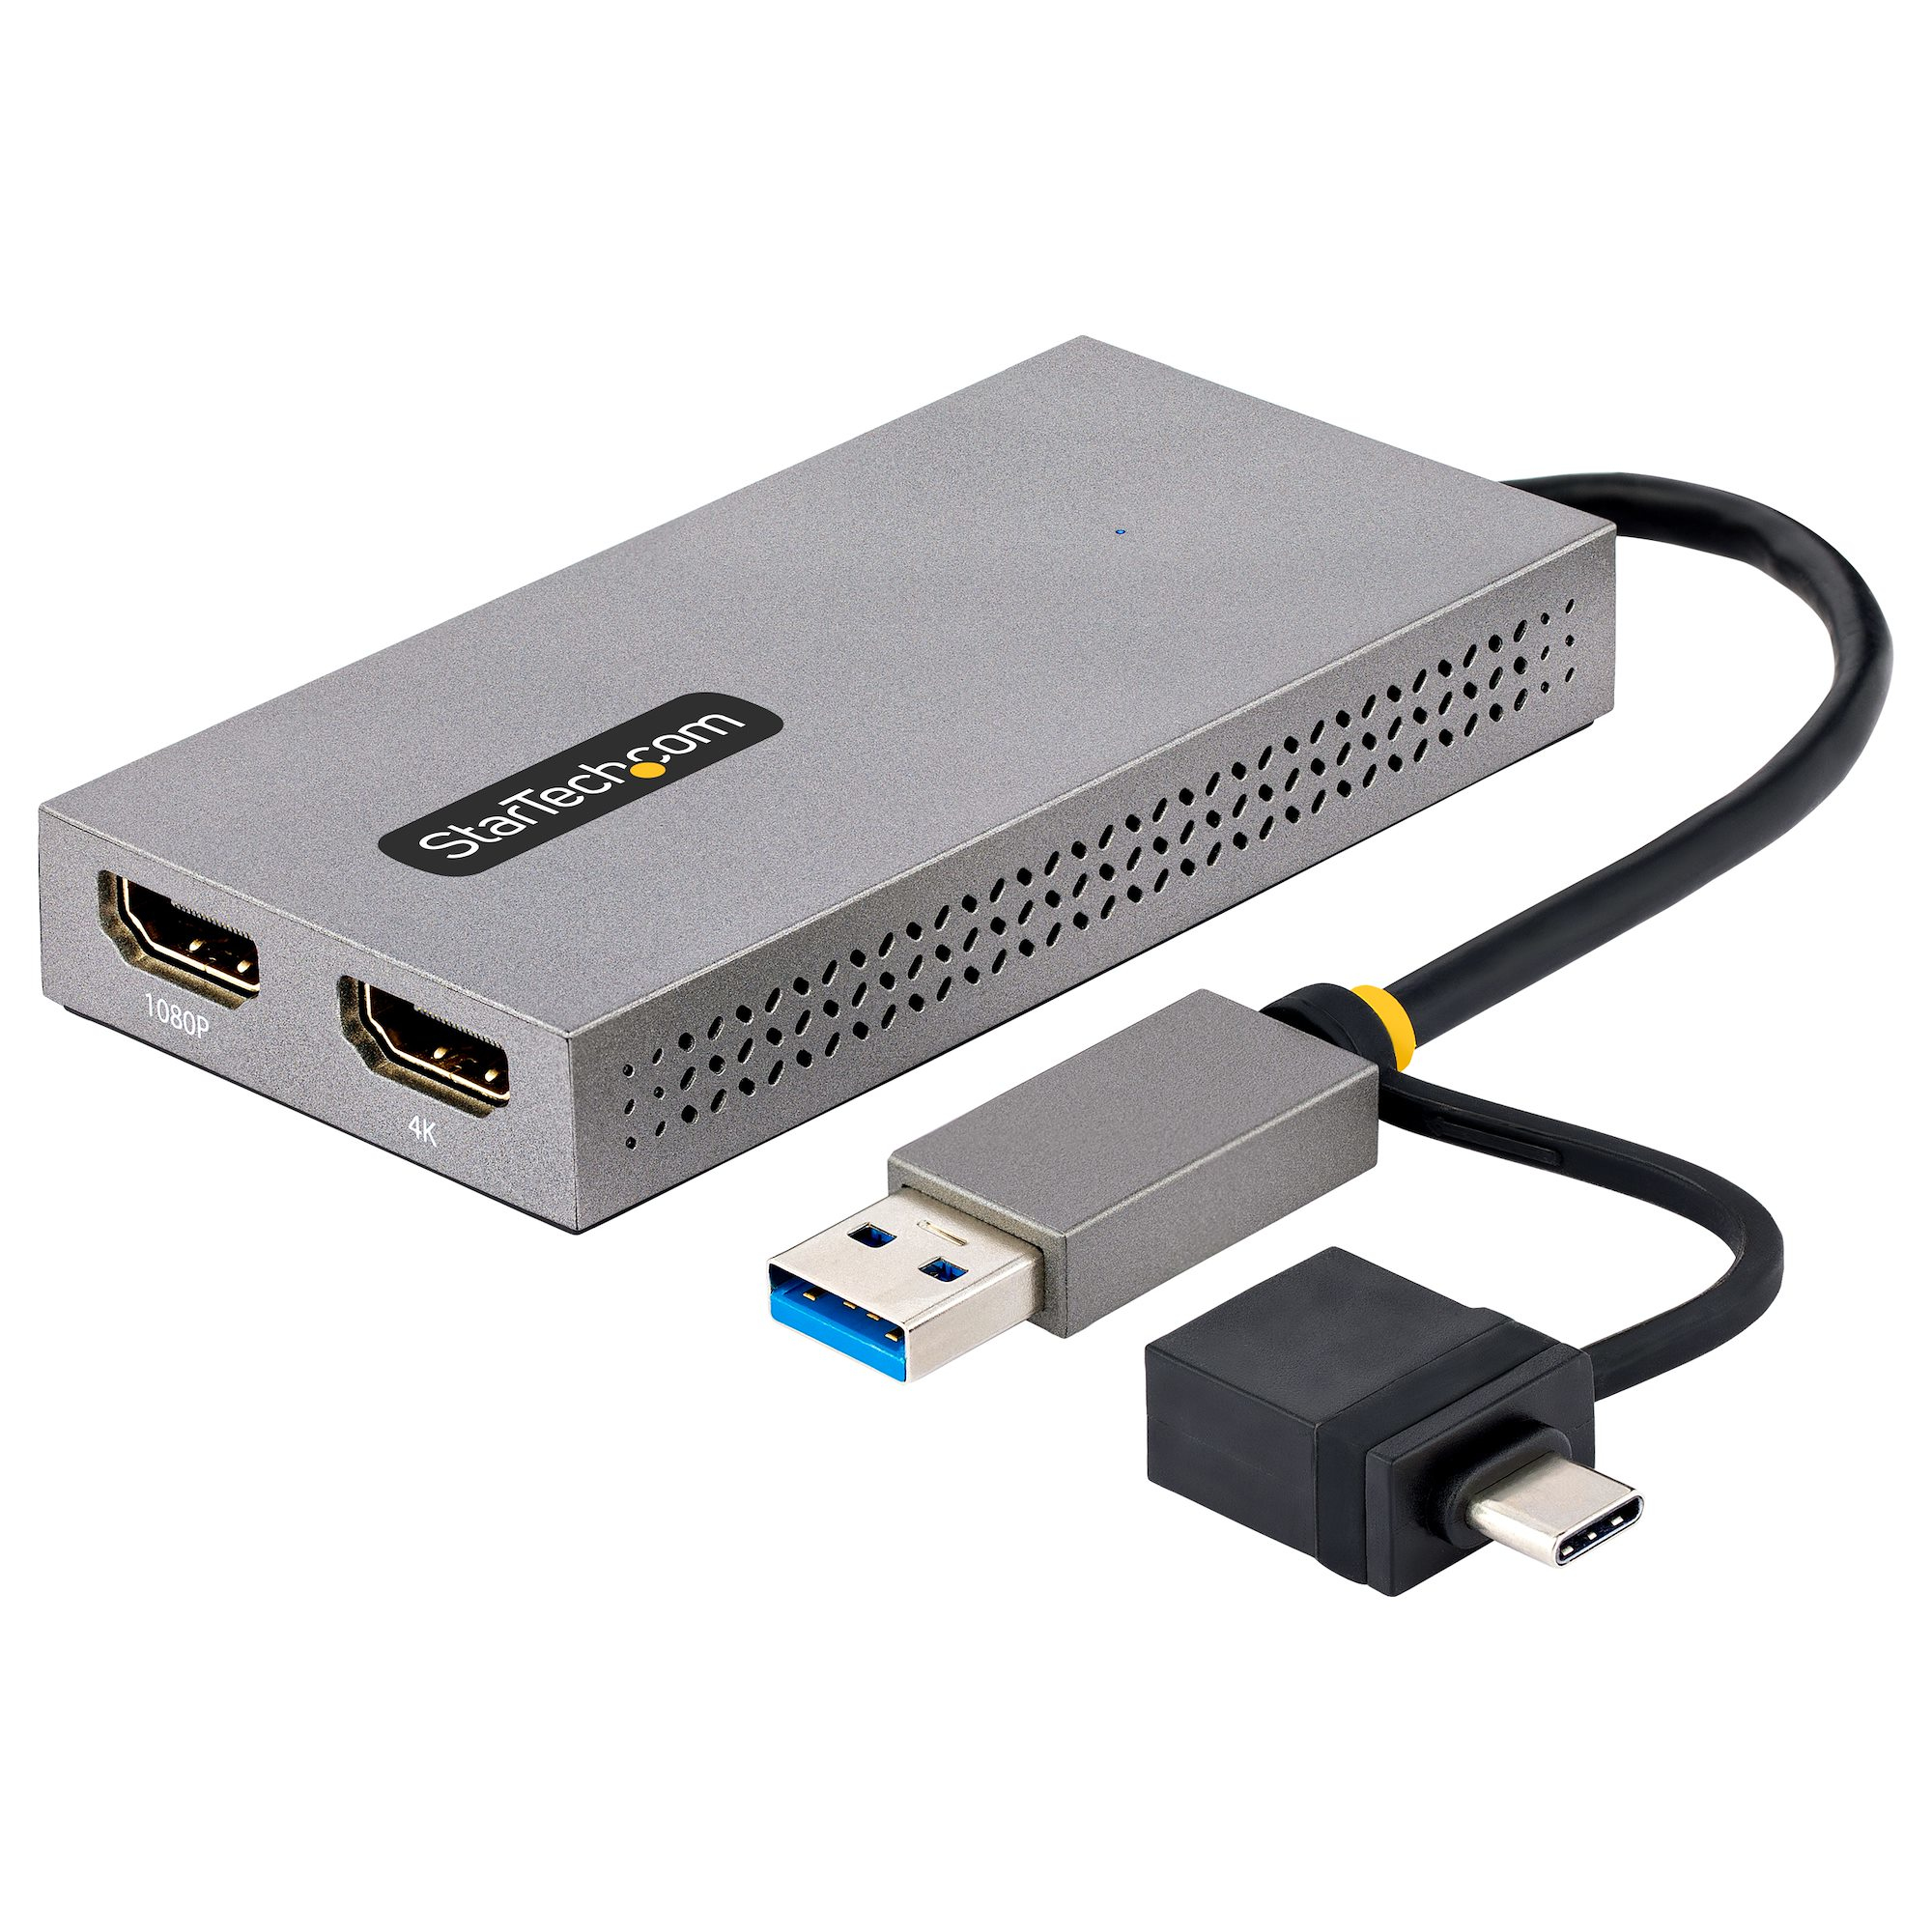 Image of StarTech.com Adattatore USB 3.0 a HDMI, Scheda Video Esterna USB 3.0 a Doppio HDMI (1x 4K30Hz/1x 1080p), Cavo da 11cm integrato con Dongle da USB-A a USB-C; Convertitore da USB-A/C a Dual HDMI - Win/Mac